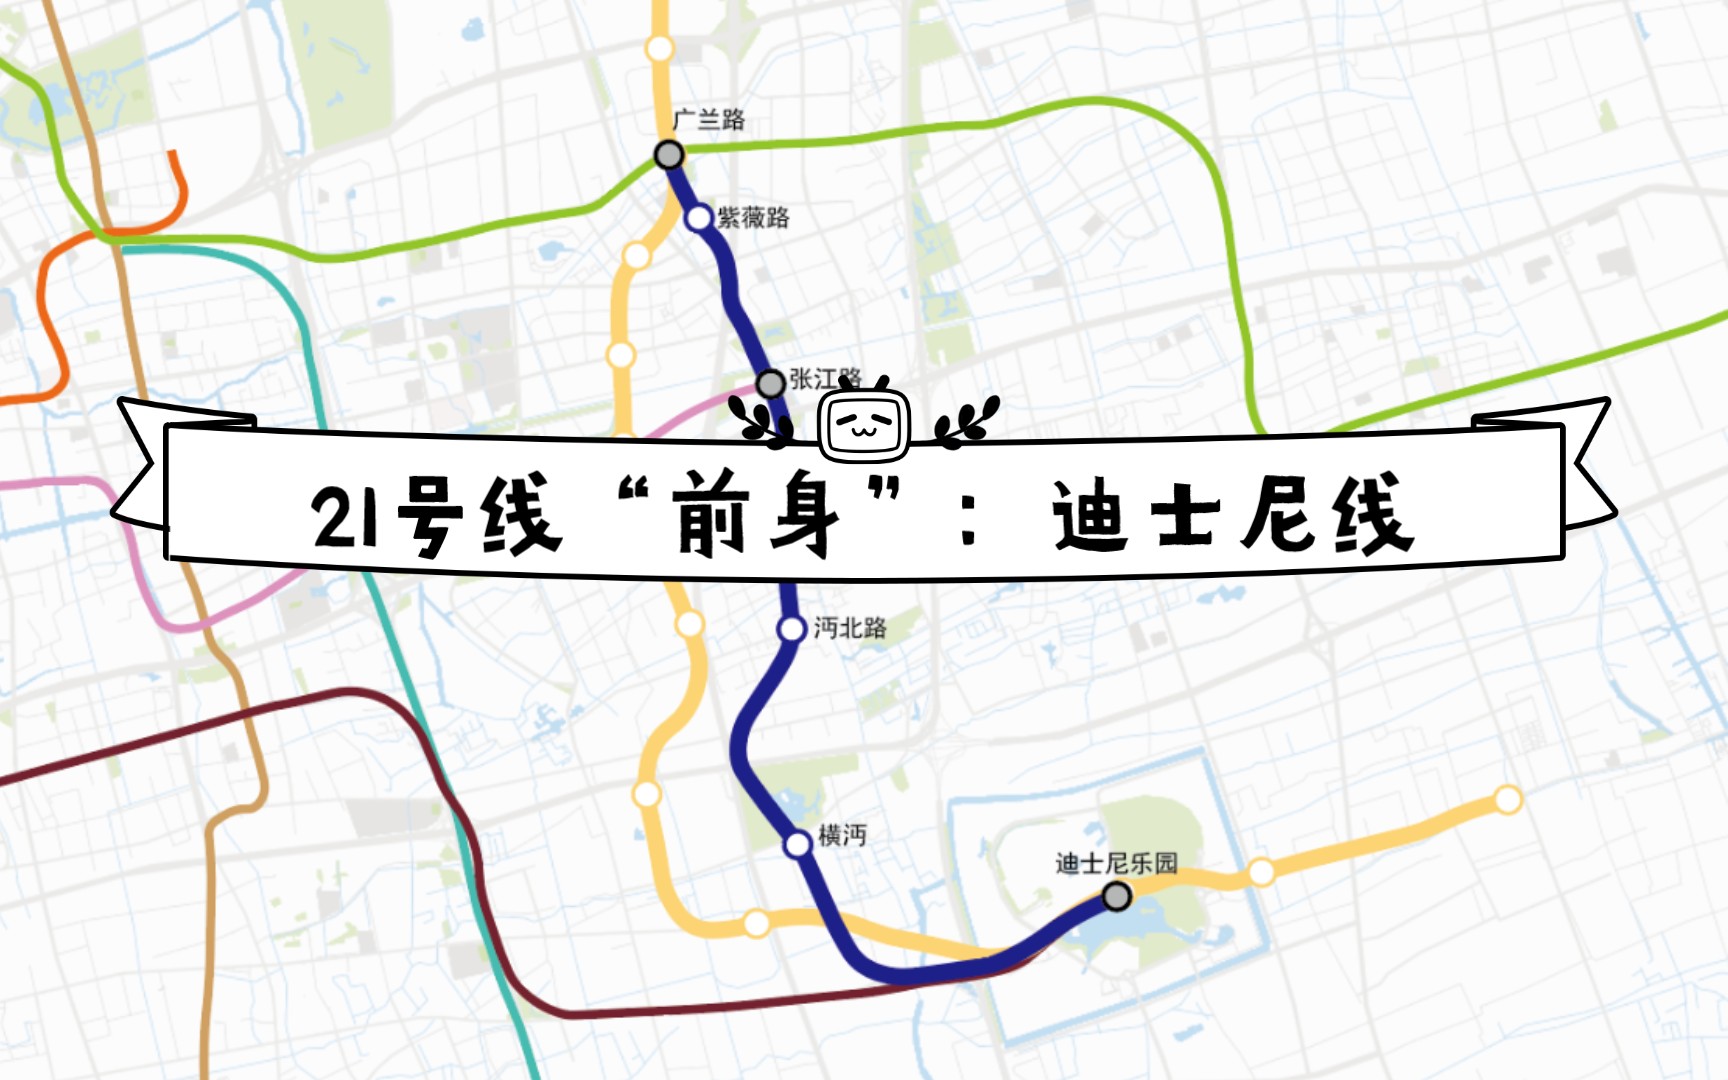 【上海地铁】21号线的前身——迪士尼线